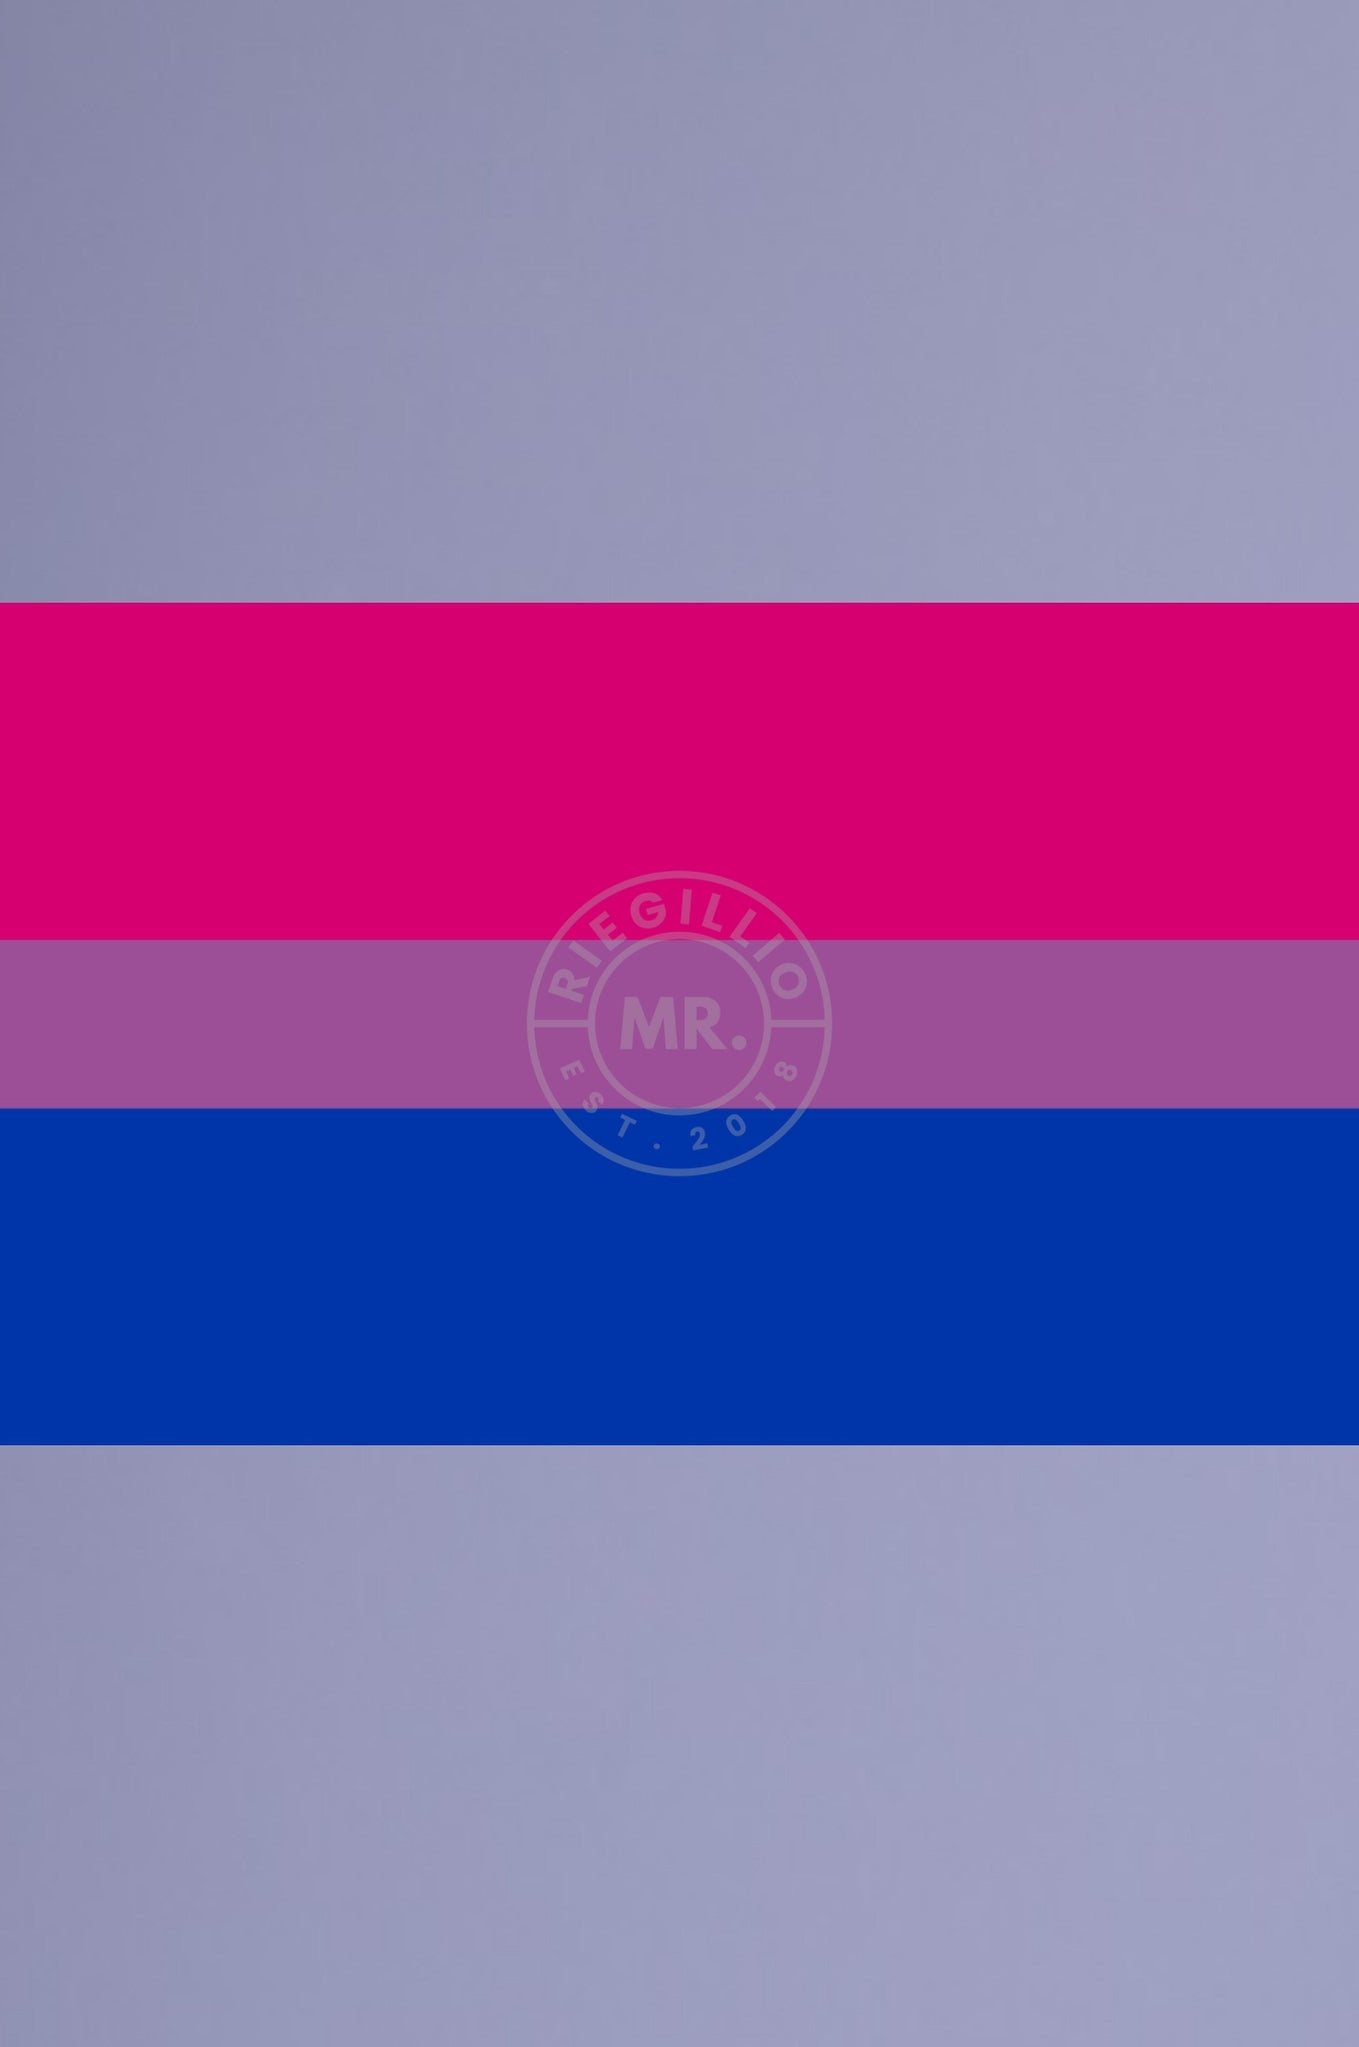 Bisexual Pride Flag 90cm x 150cm at MR. Riegillio